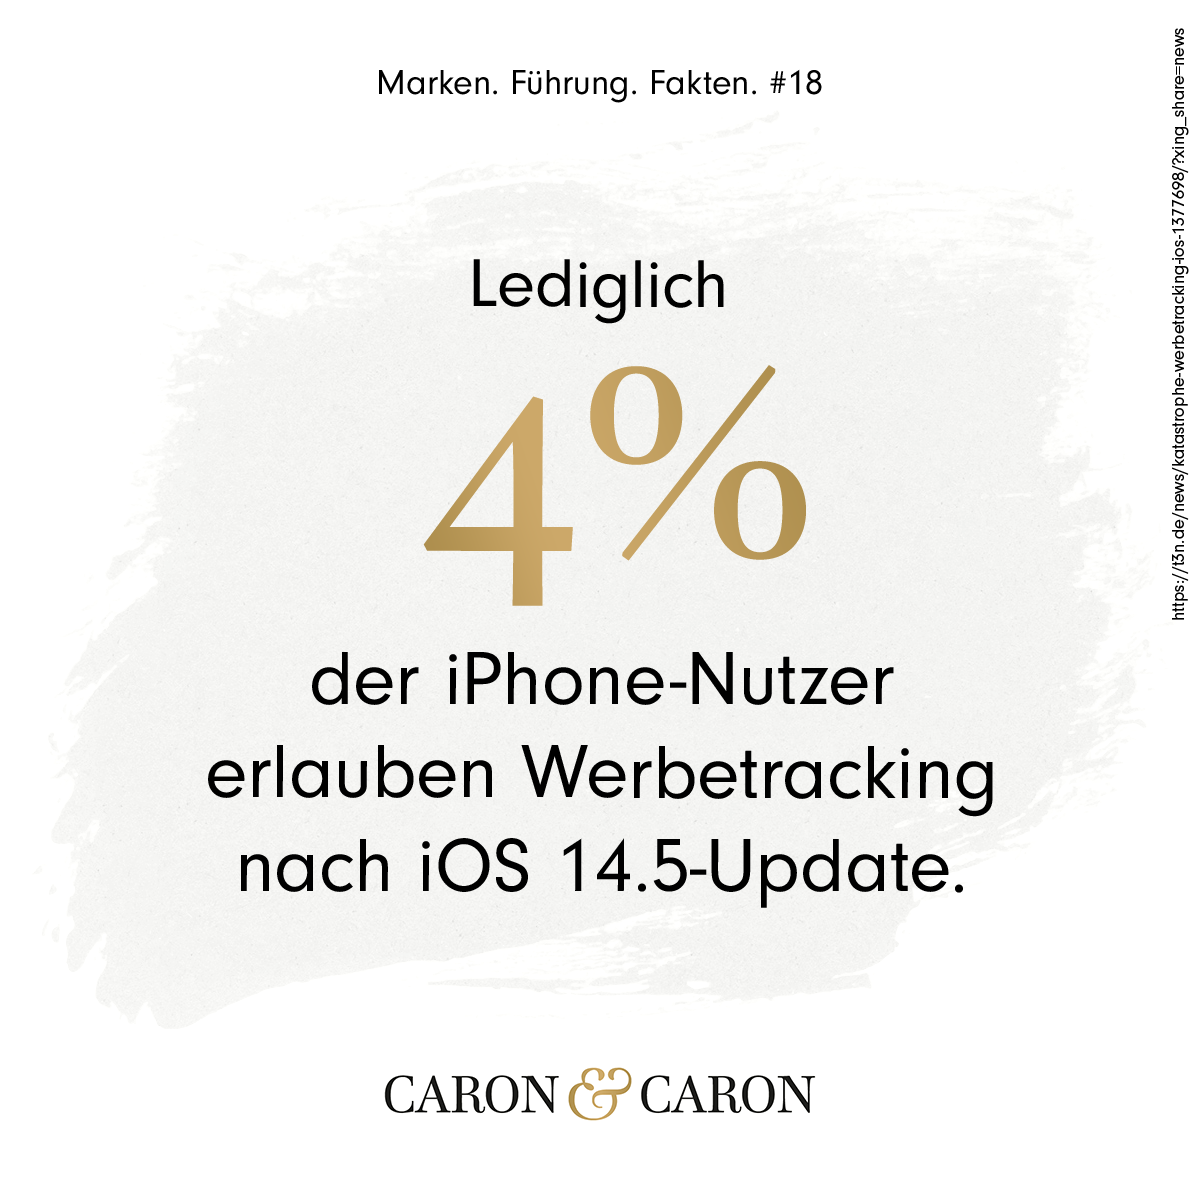 Nur 4 Prozent der iPhone Nutzer erlauben nach dem iOS 14.5-Update Tracking.